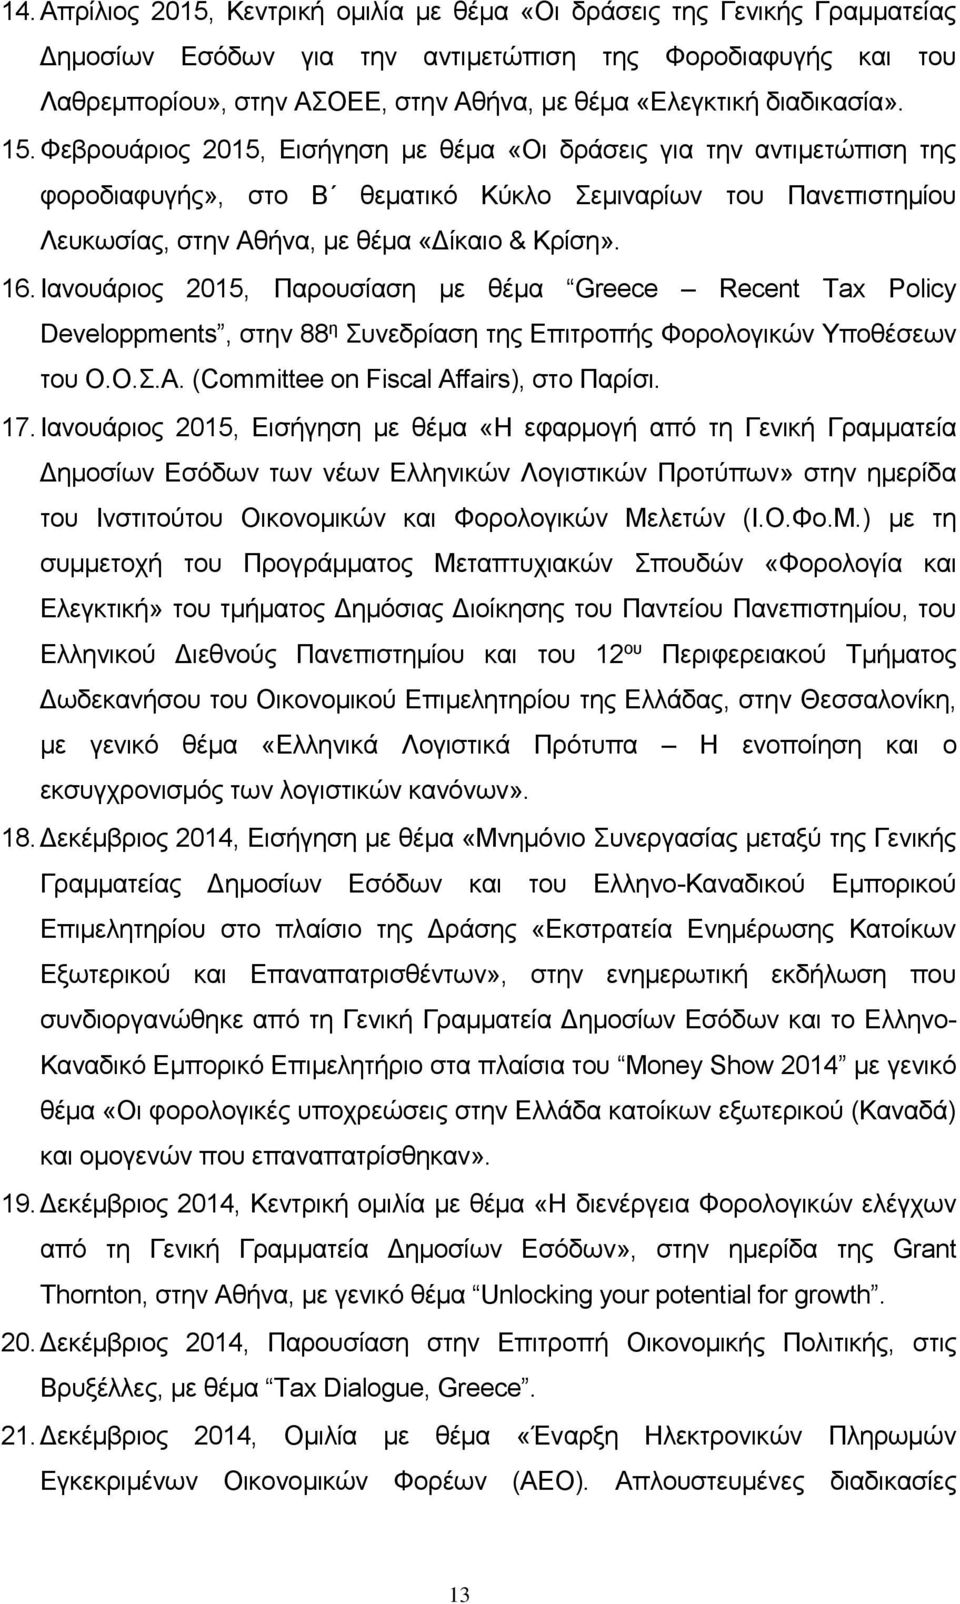 Φεβρουάριος 2015, Εισήγηση με θέμα «Οι δράσεις για την αντιμετώπιση της φοροδιαφυγής», στο Β θεματικό Κύκλο Σεμιναρίων του Πανεπιστημίου Λευκωσίας, στην Αθήνα, με θέμα «Δίκαιο & Κρίση». 16.